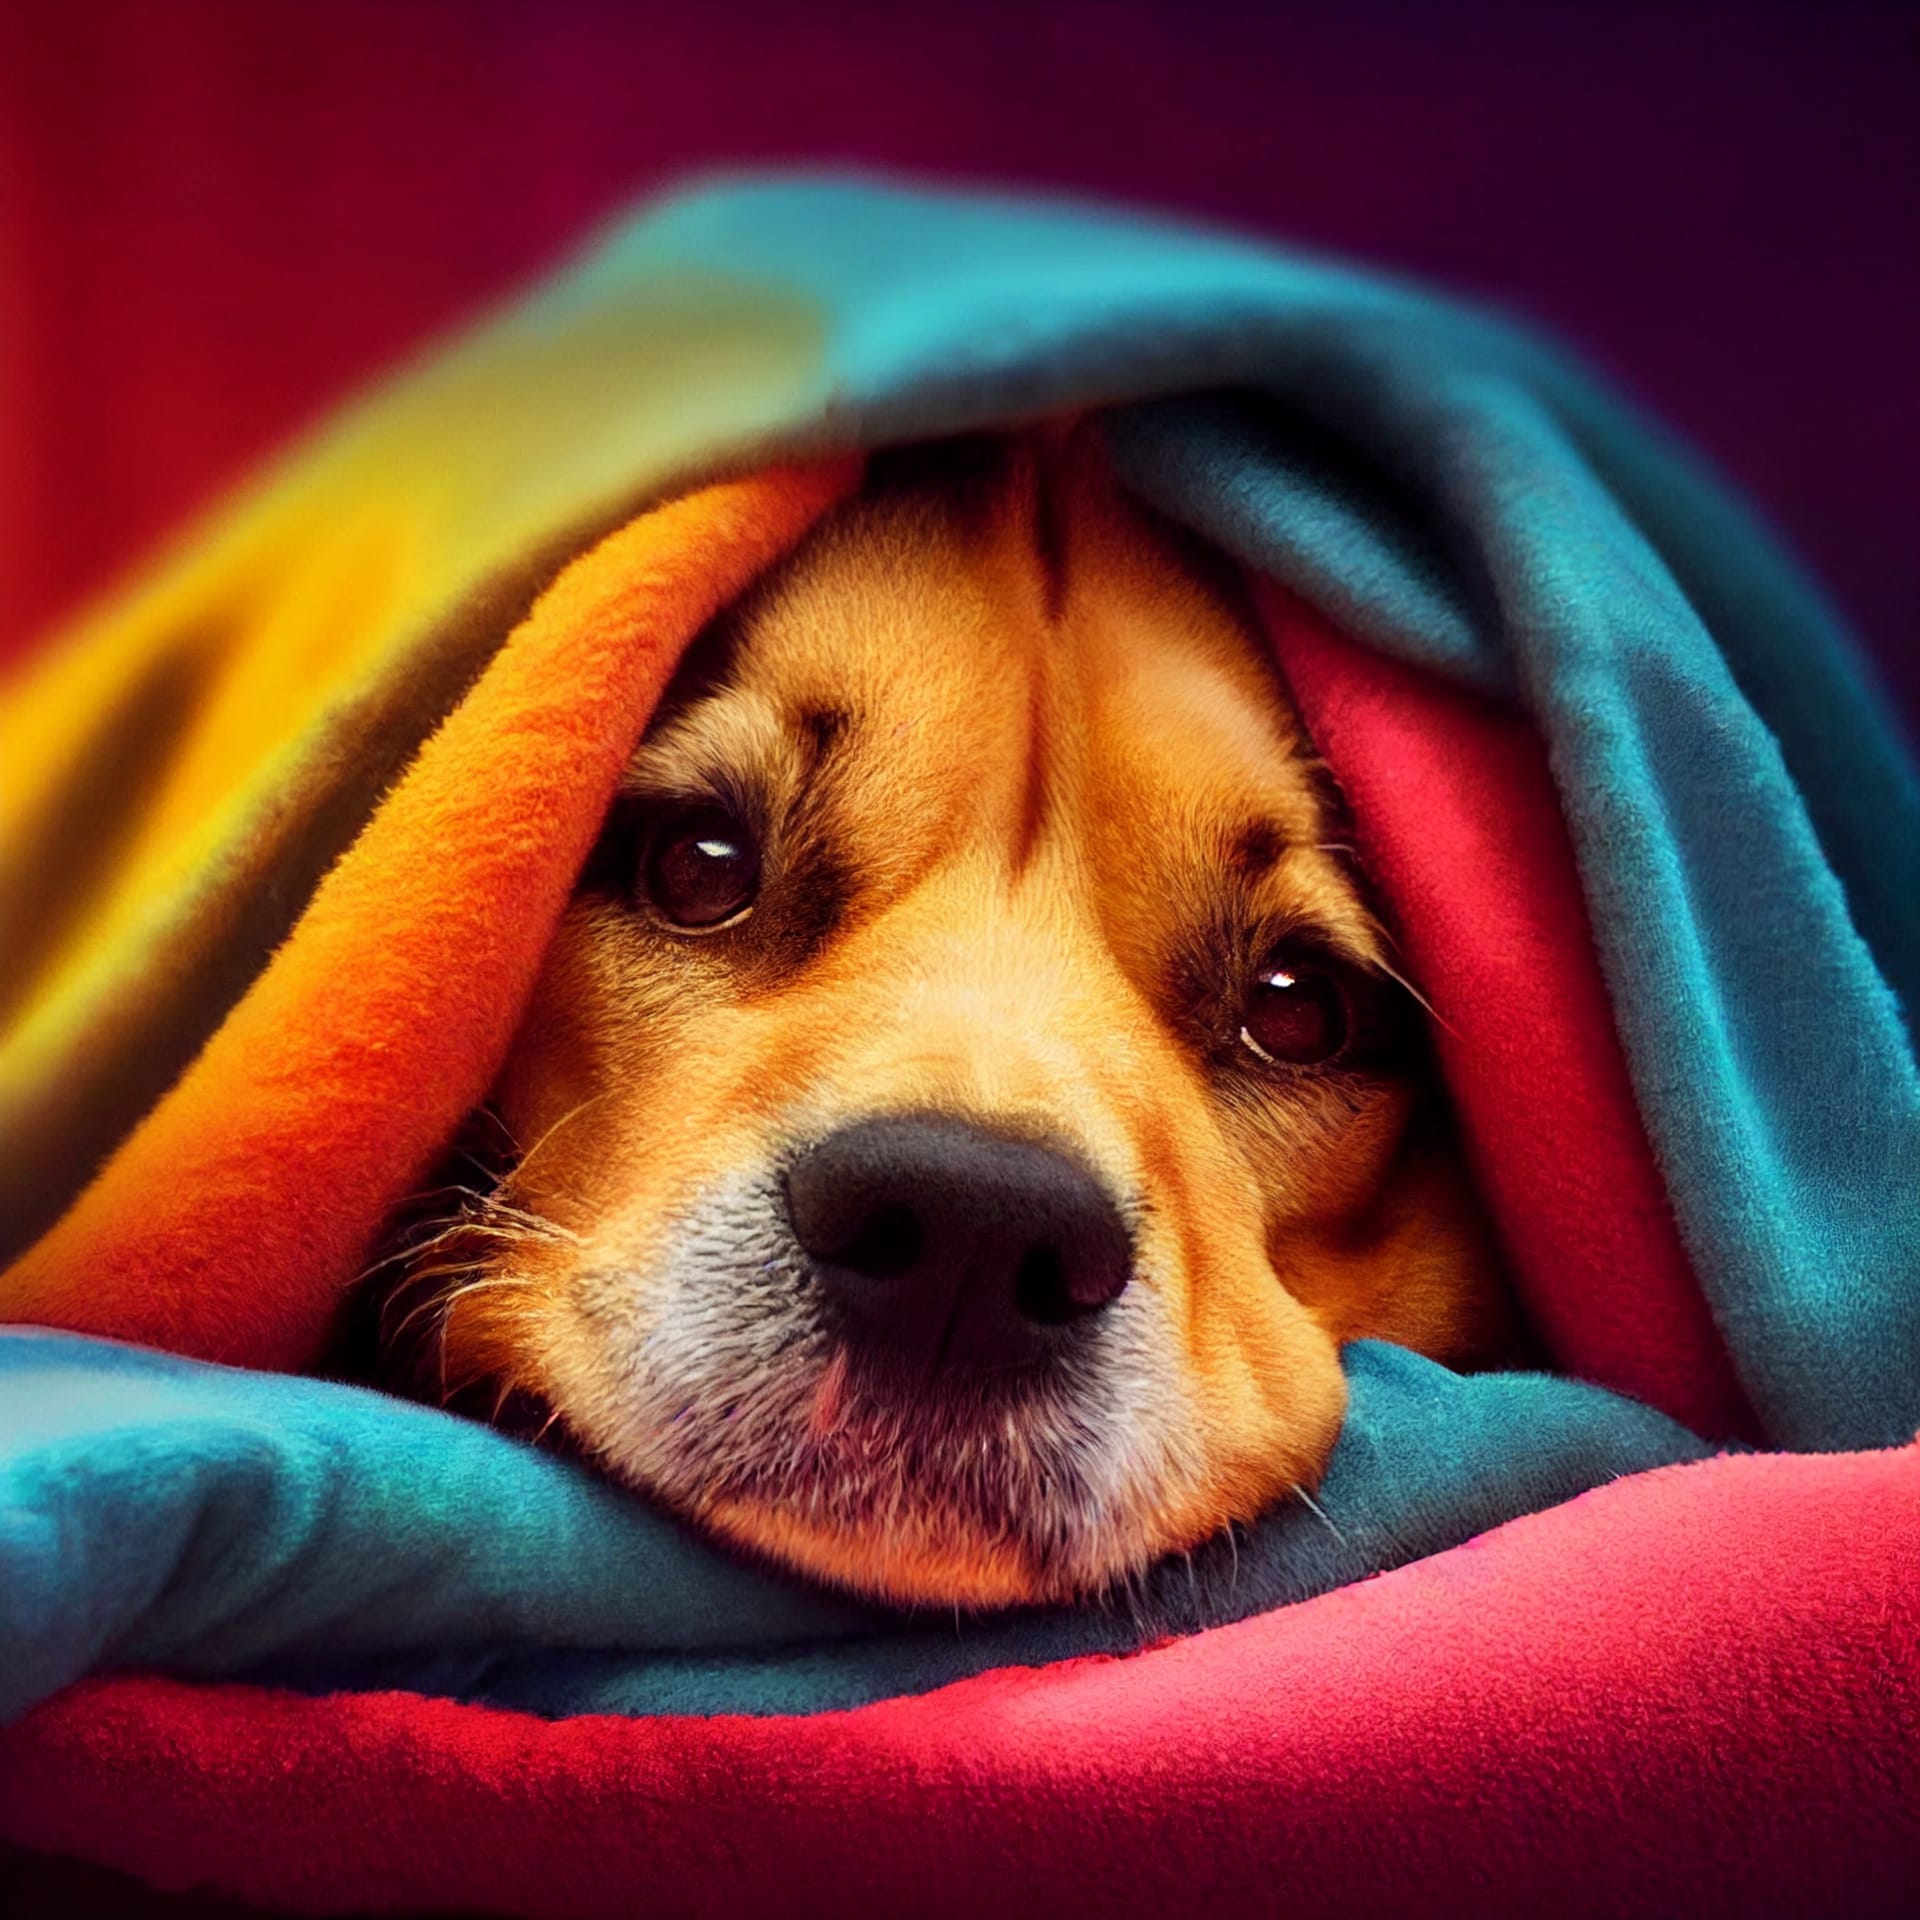 Dog images dog bed covered blankets